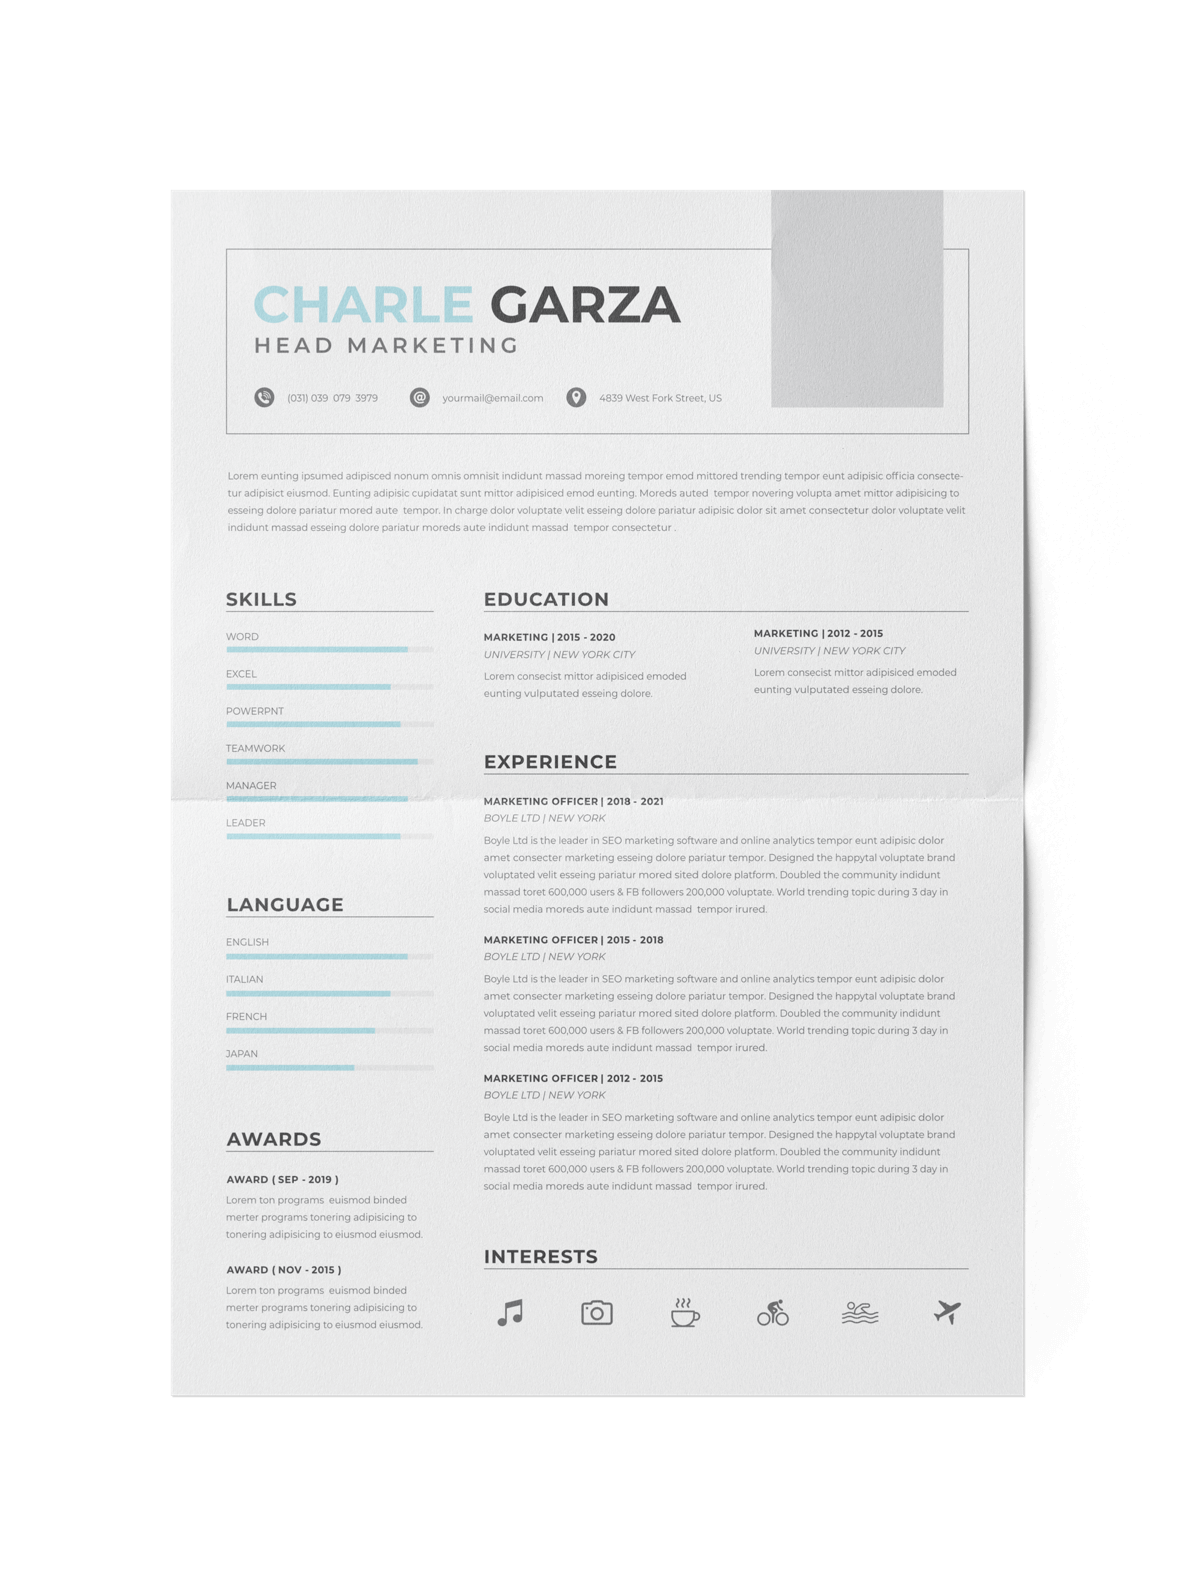 CV #142 Charle Garza